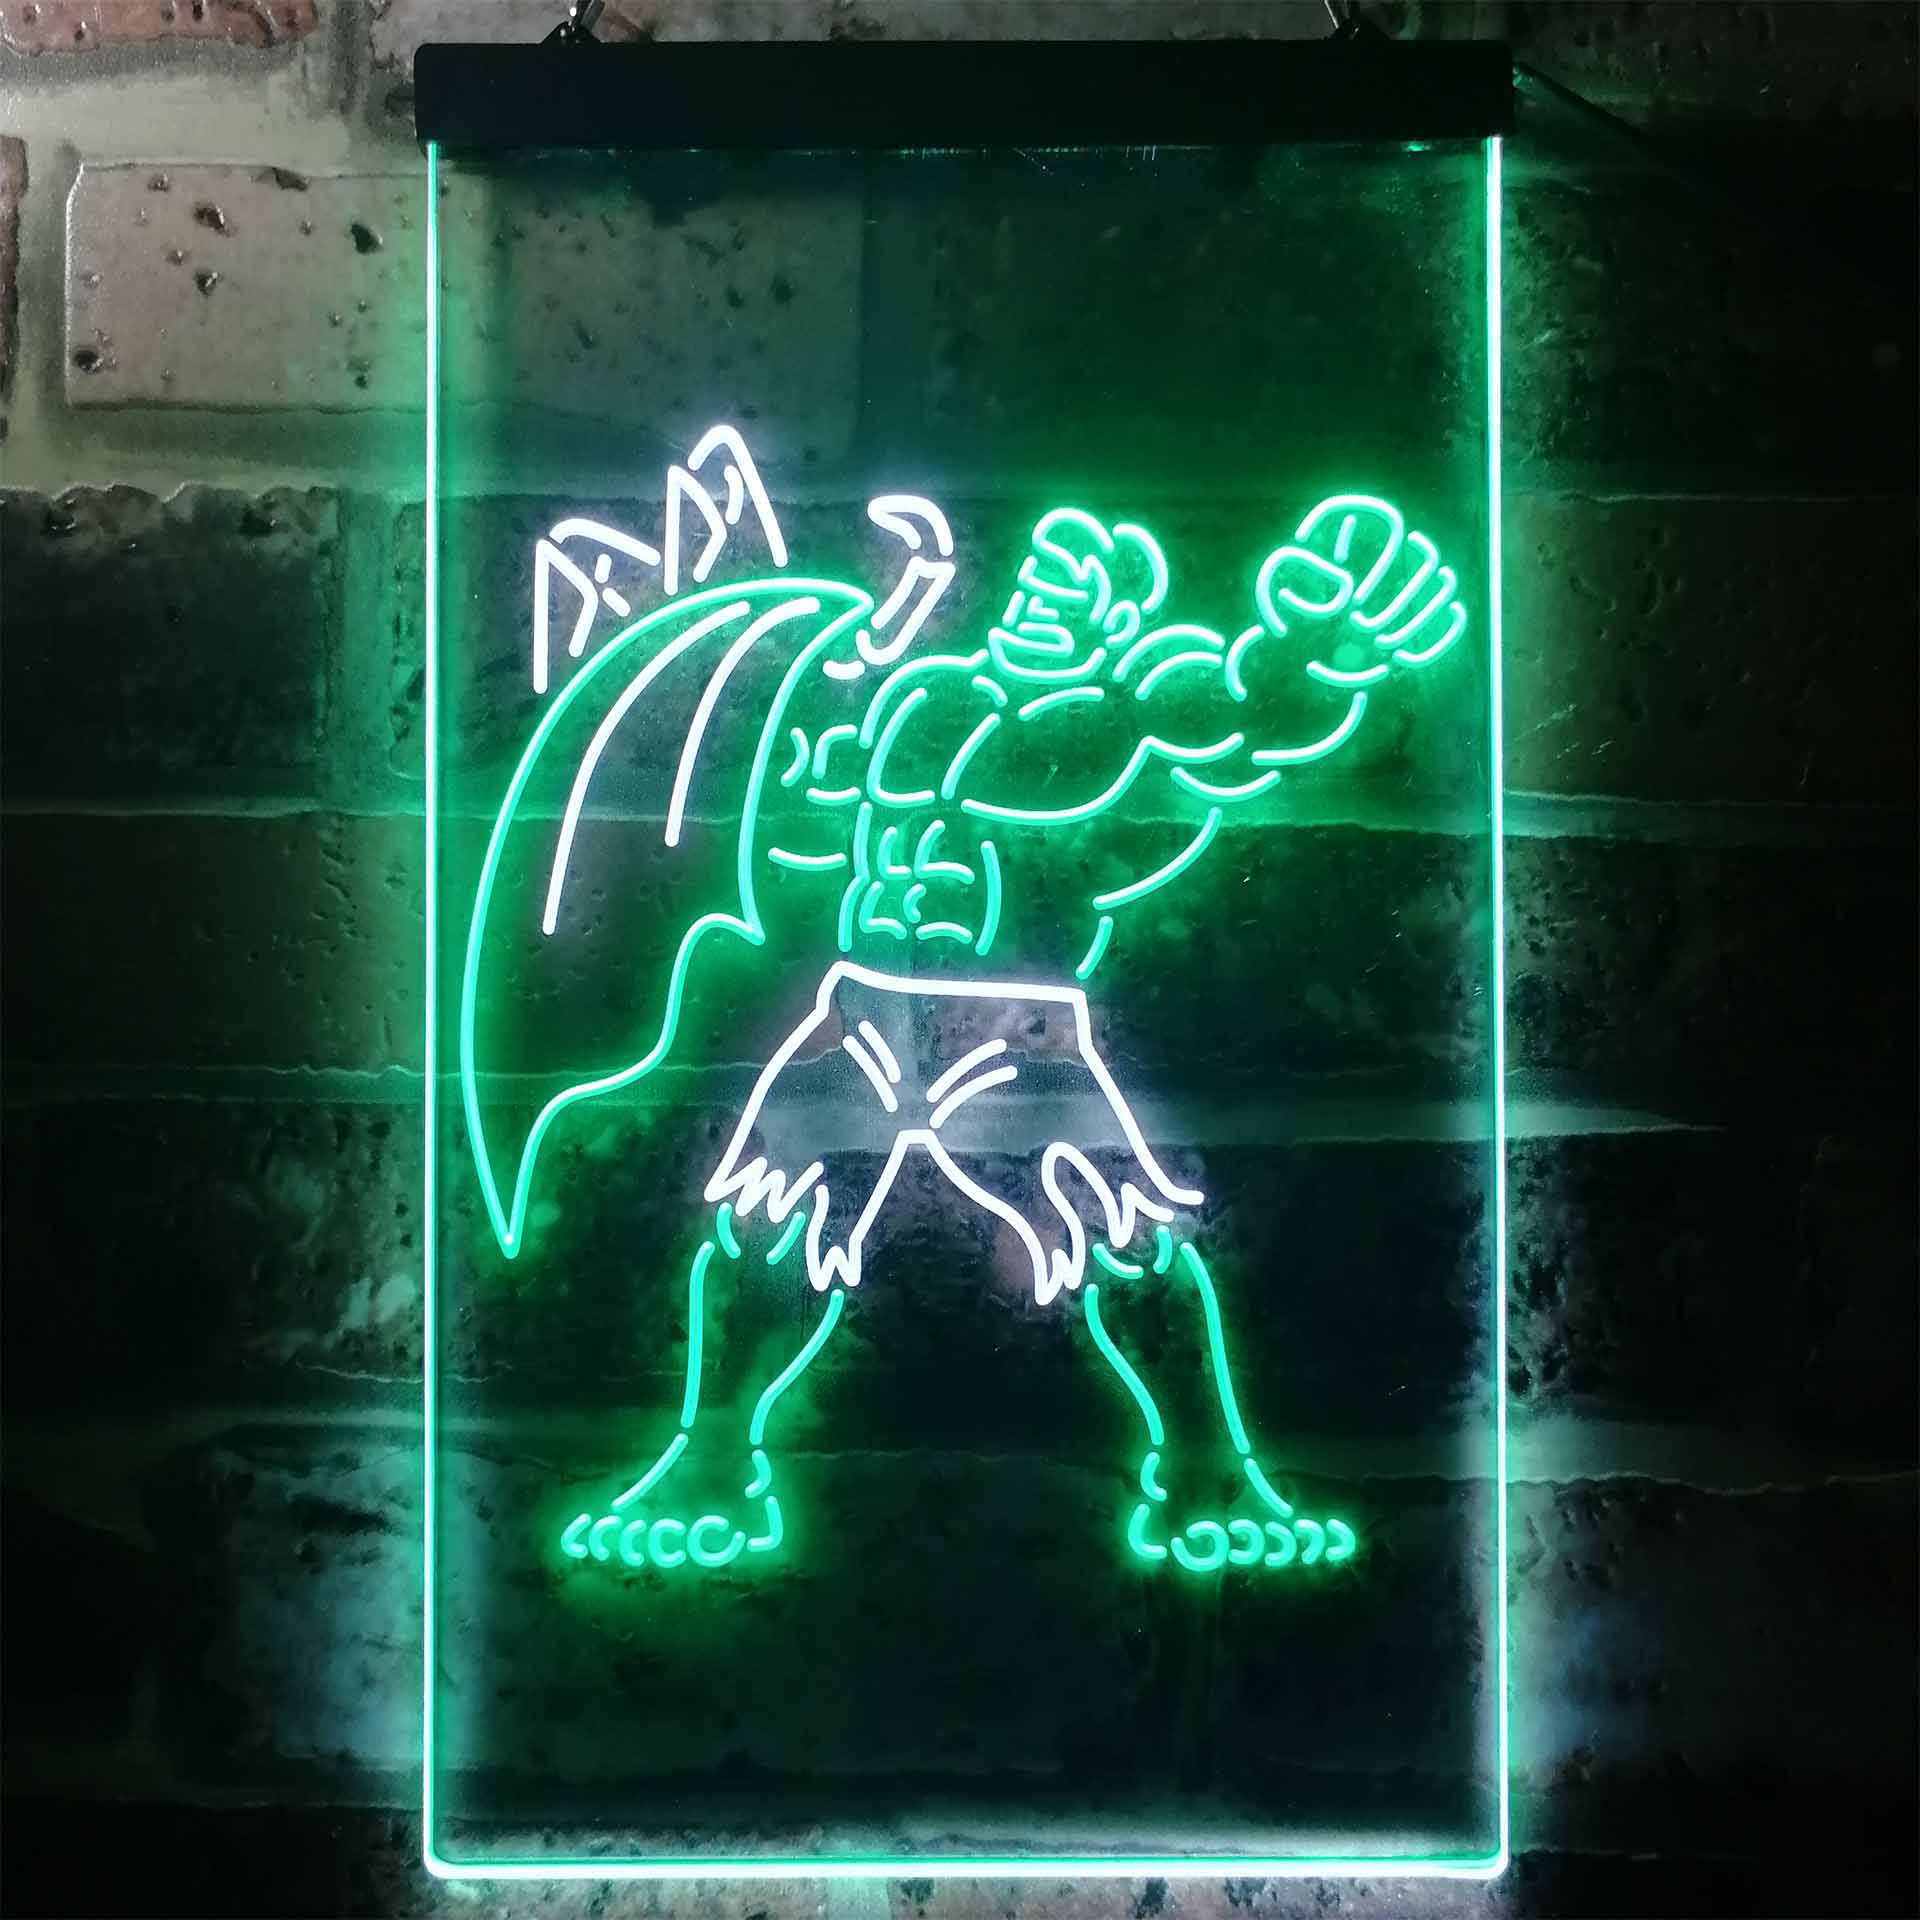 Heroes Del Silencio LED Neon Sign